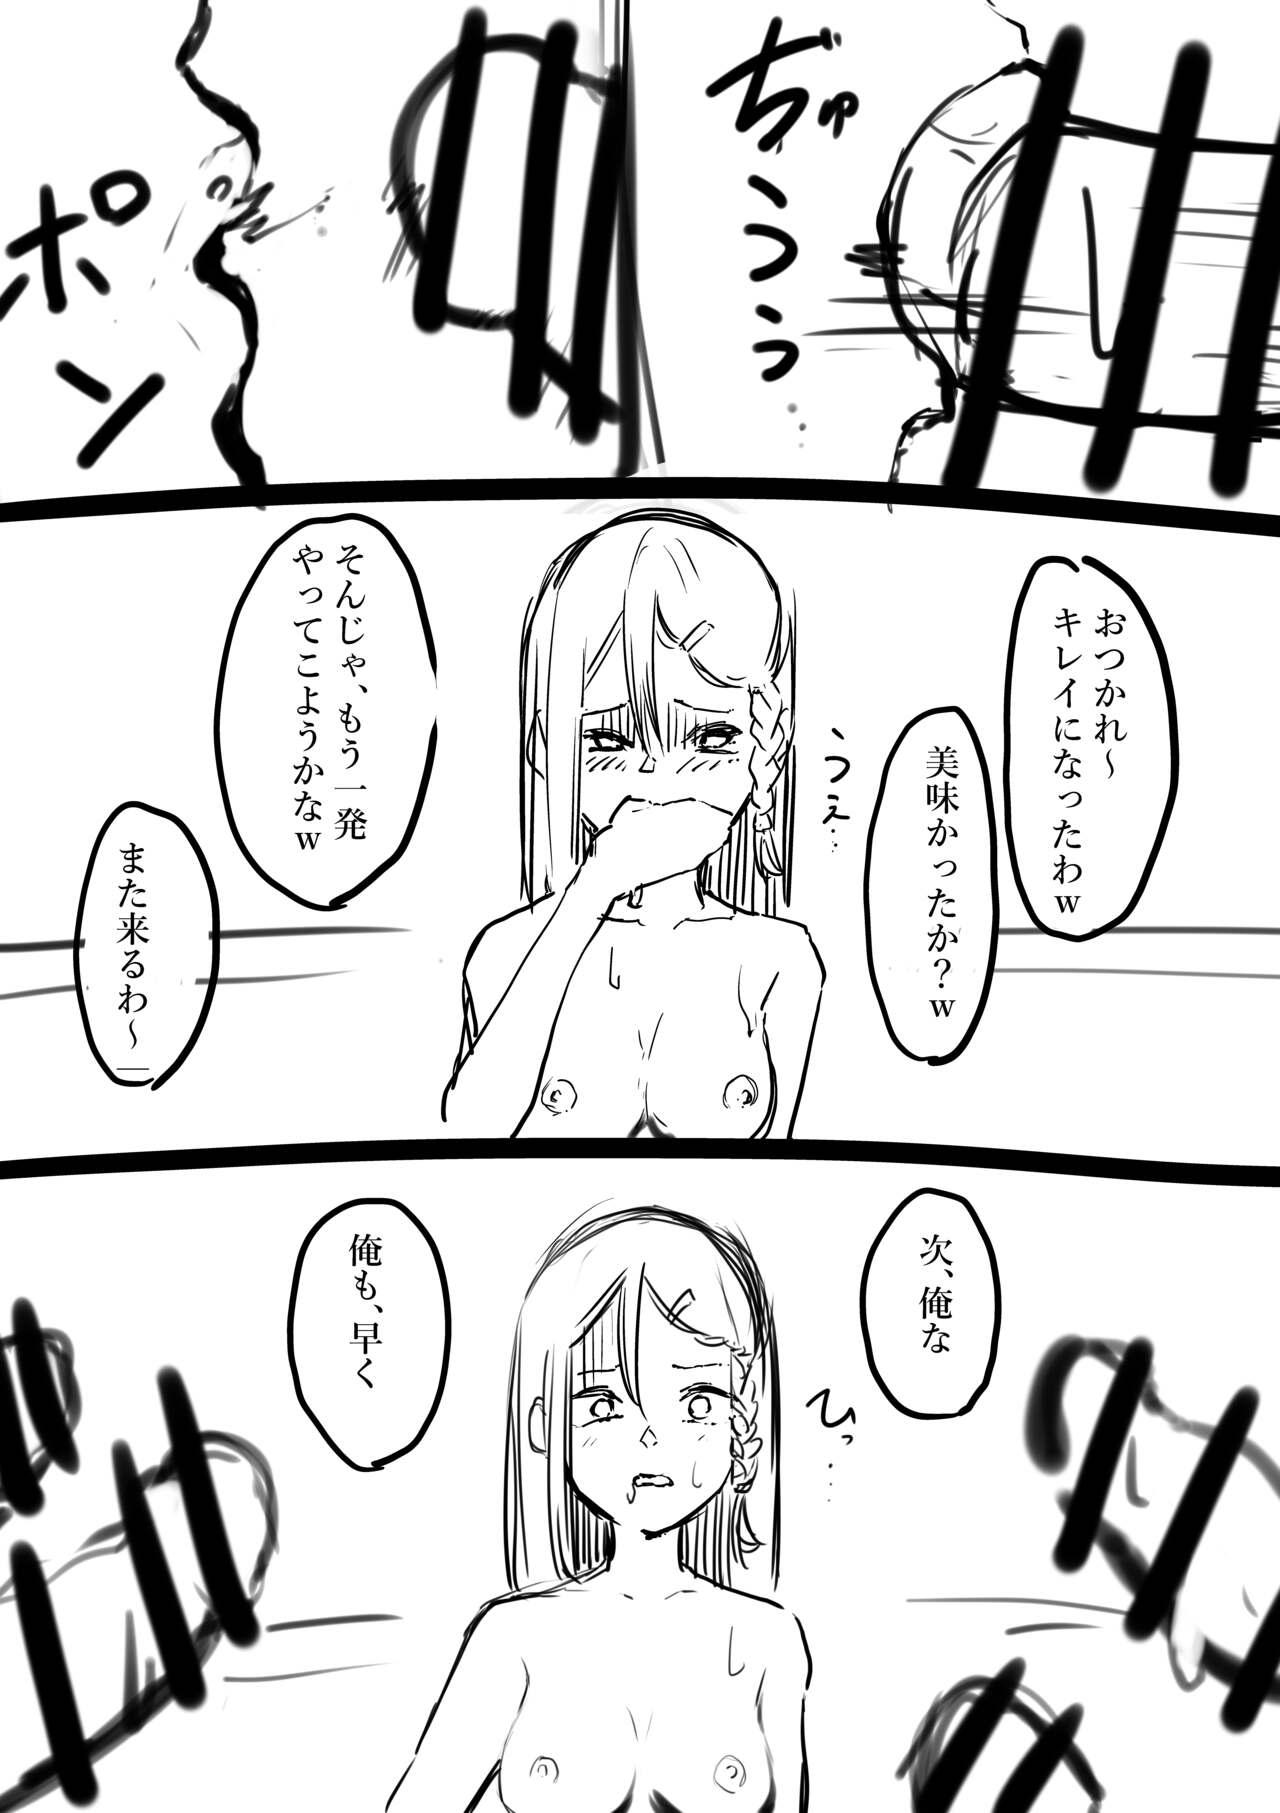 Anal Gape Takamura Manga - Original Gay Spank - Page 6